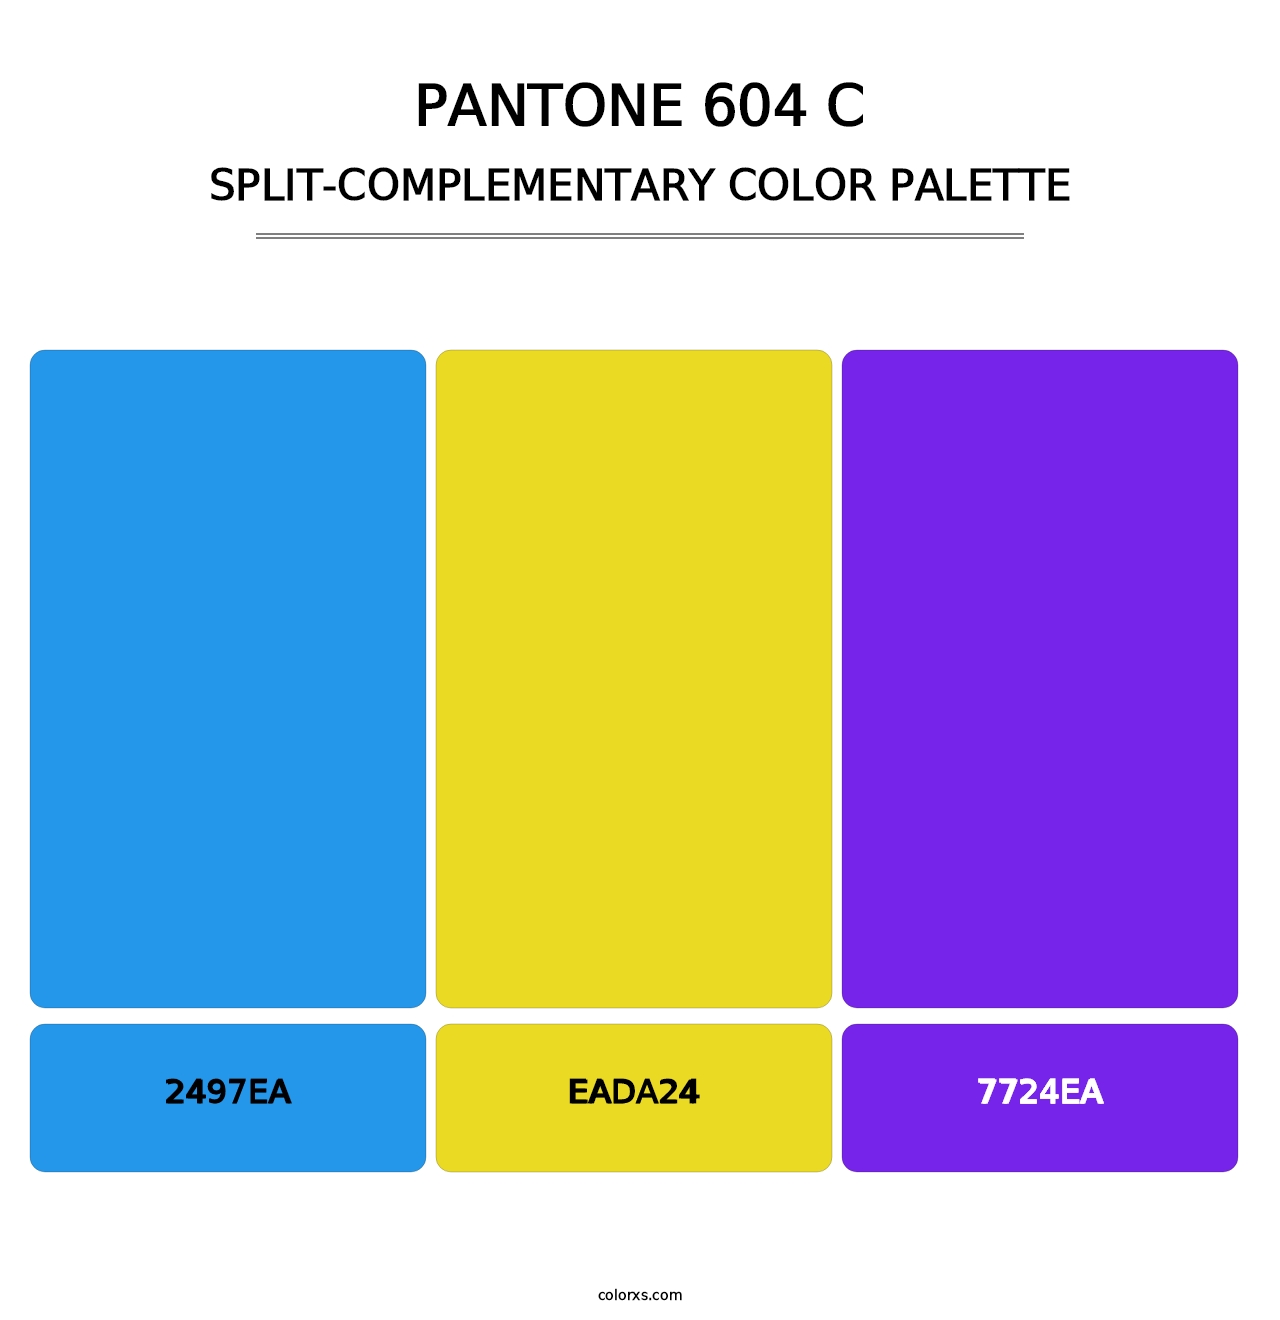 PANTONE 604 C - Split-Complementary Color Palette